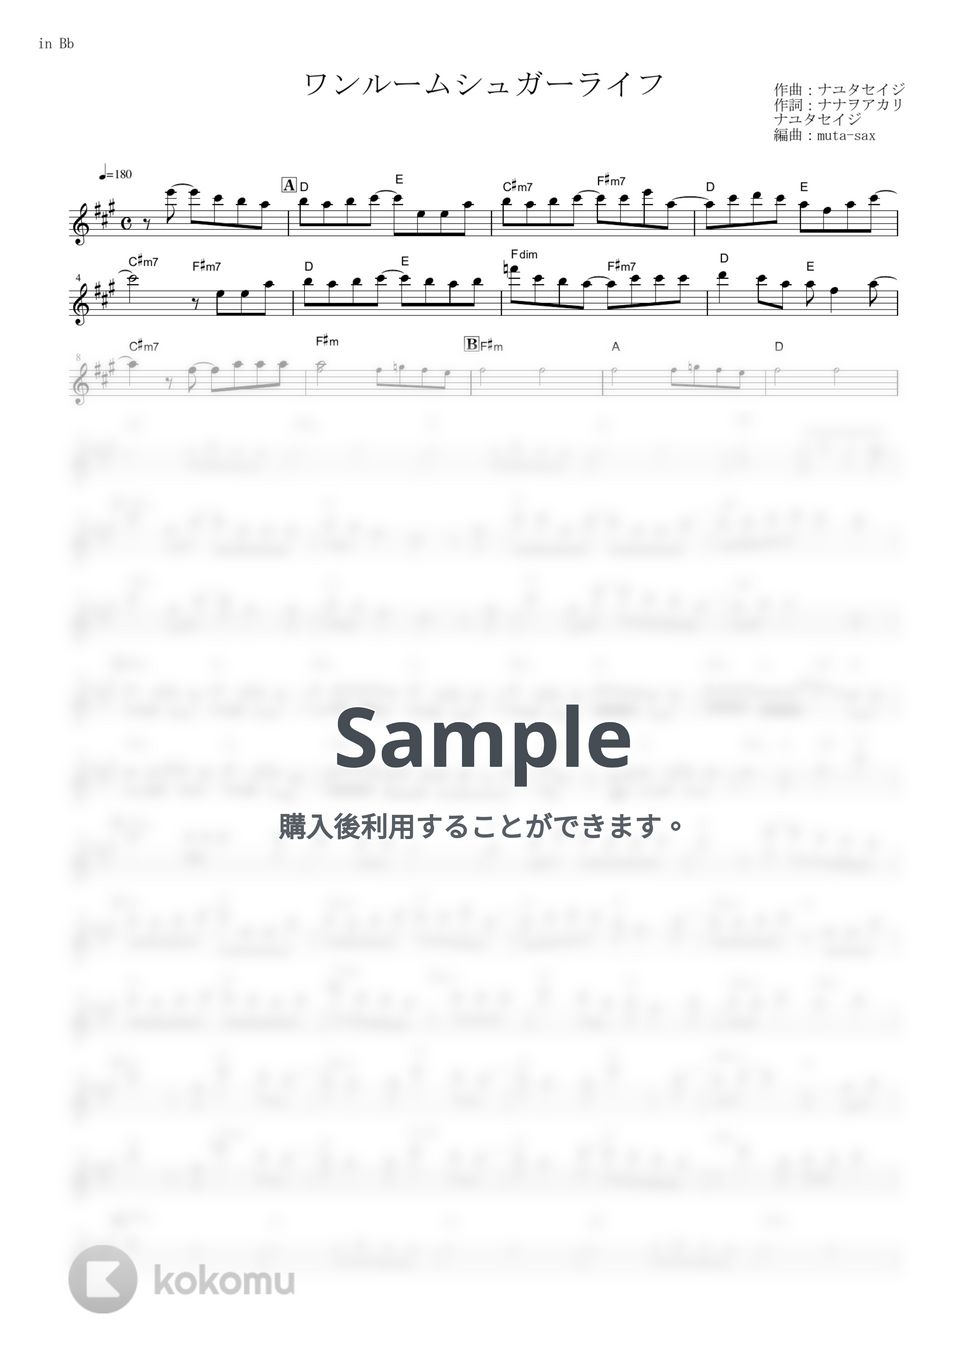 ナナヲアカリ - ワンルームシュガーライフ (『ハッピーシュガーライフ』 / in Bb) by muta-sax